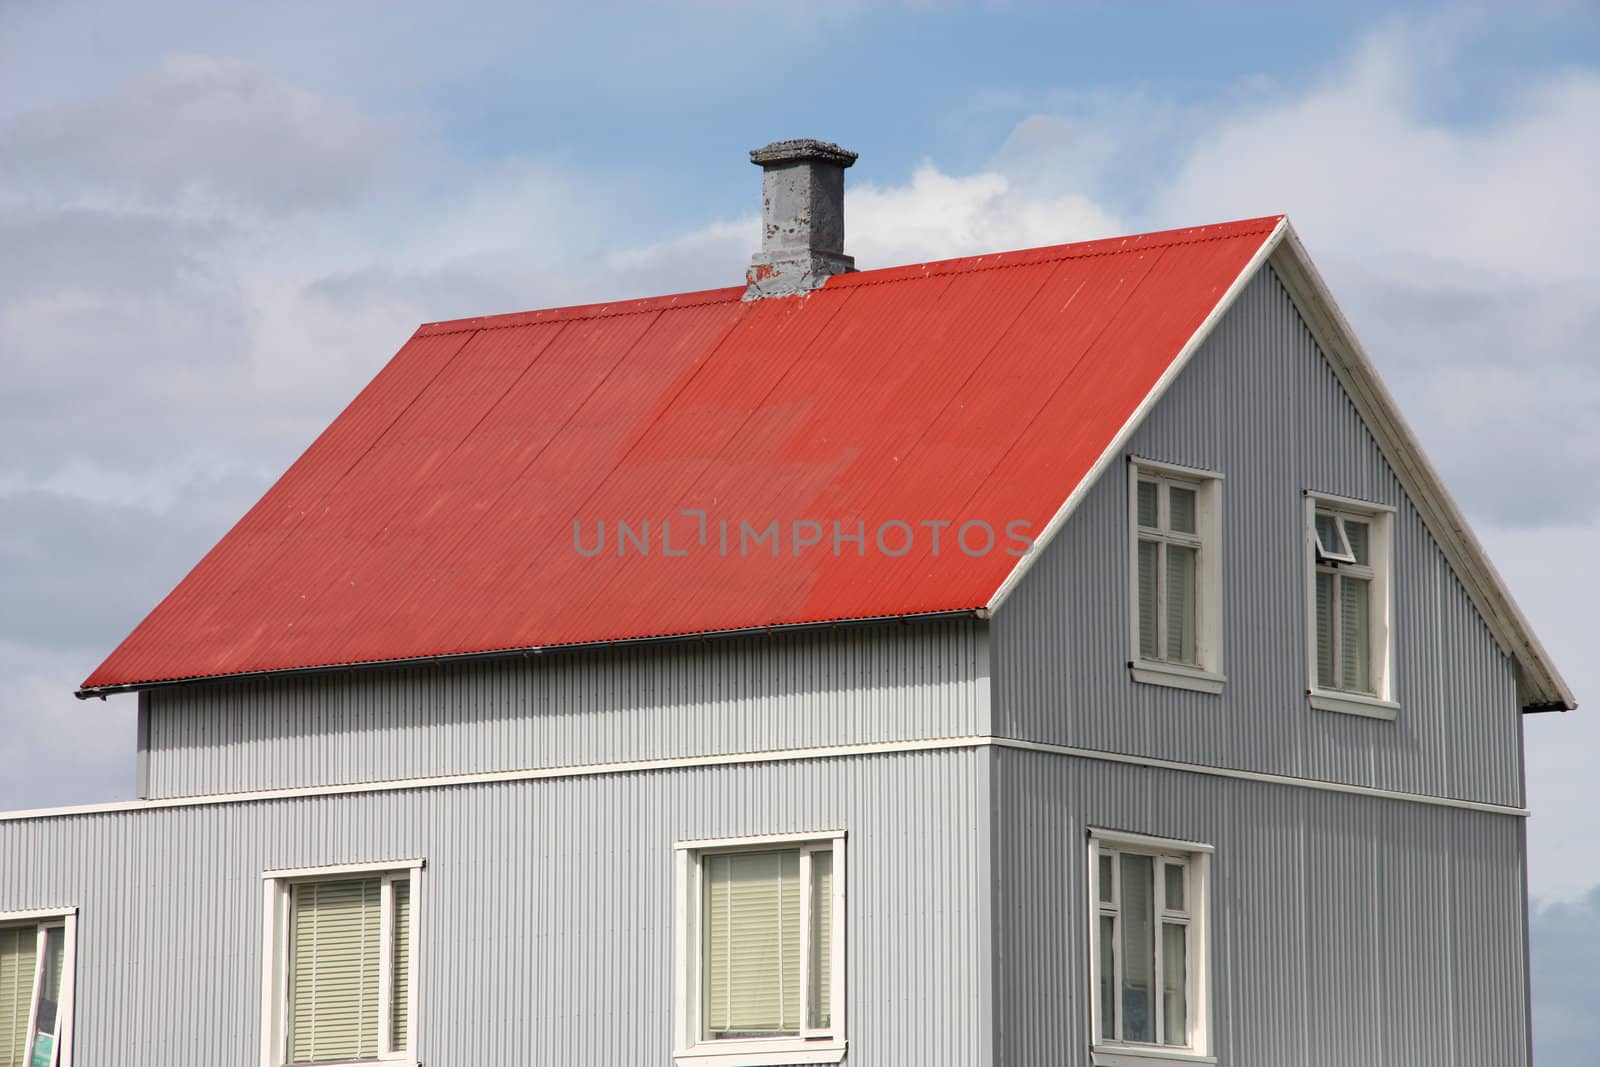 Iceland house by tupungato